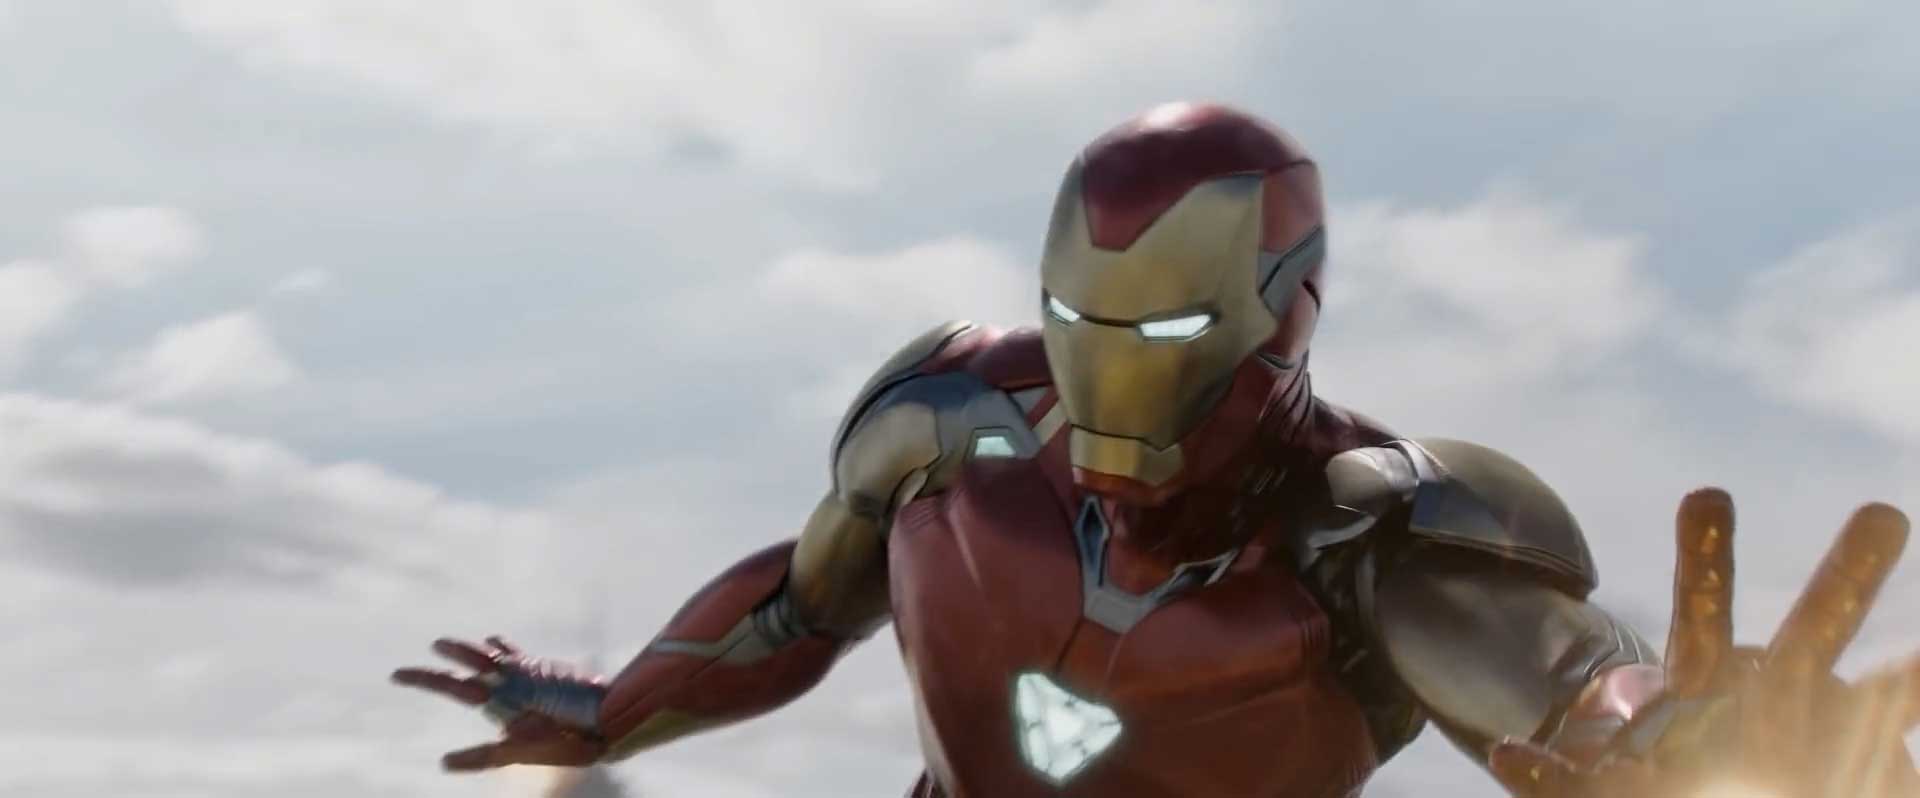 Avengers Endgame Special Look Trailer Breakdown - Iron Man New York